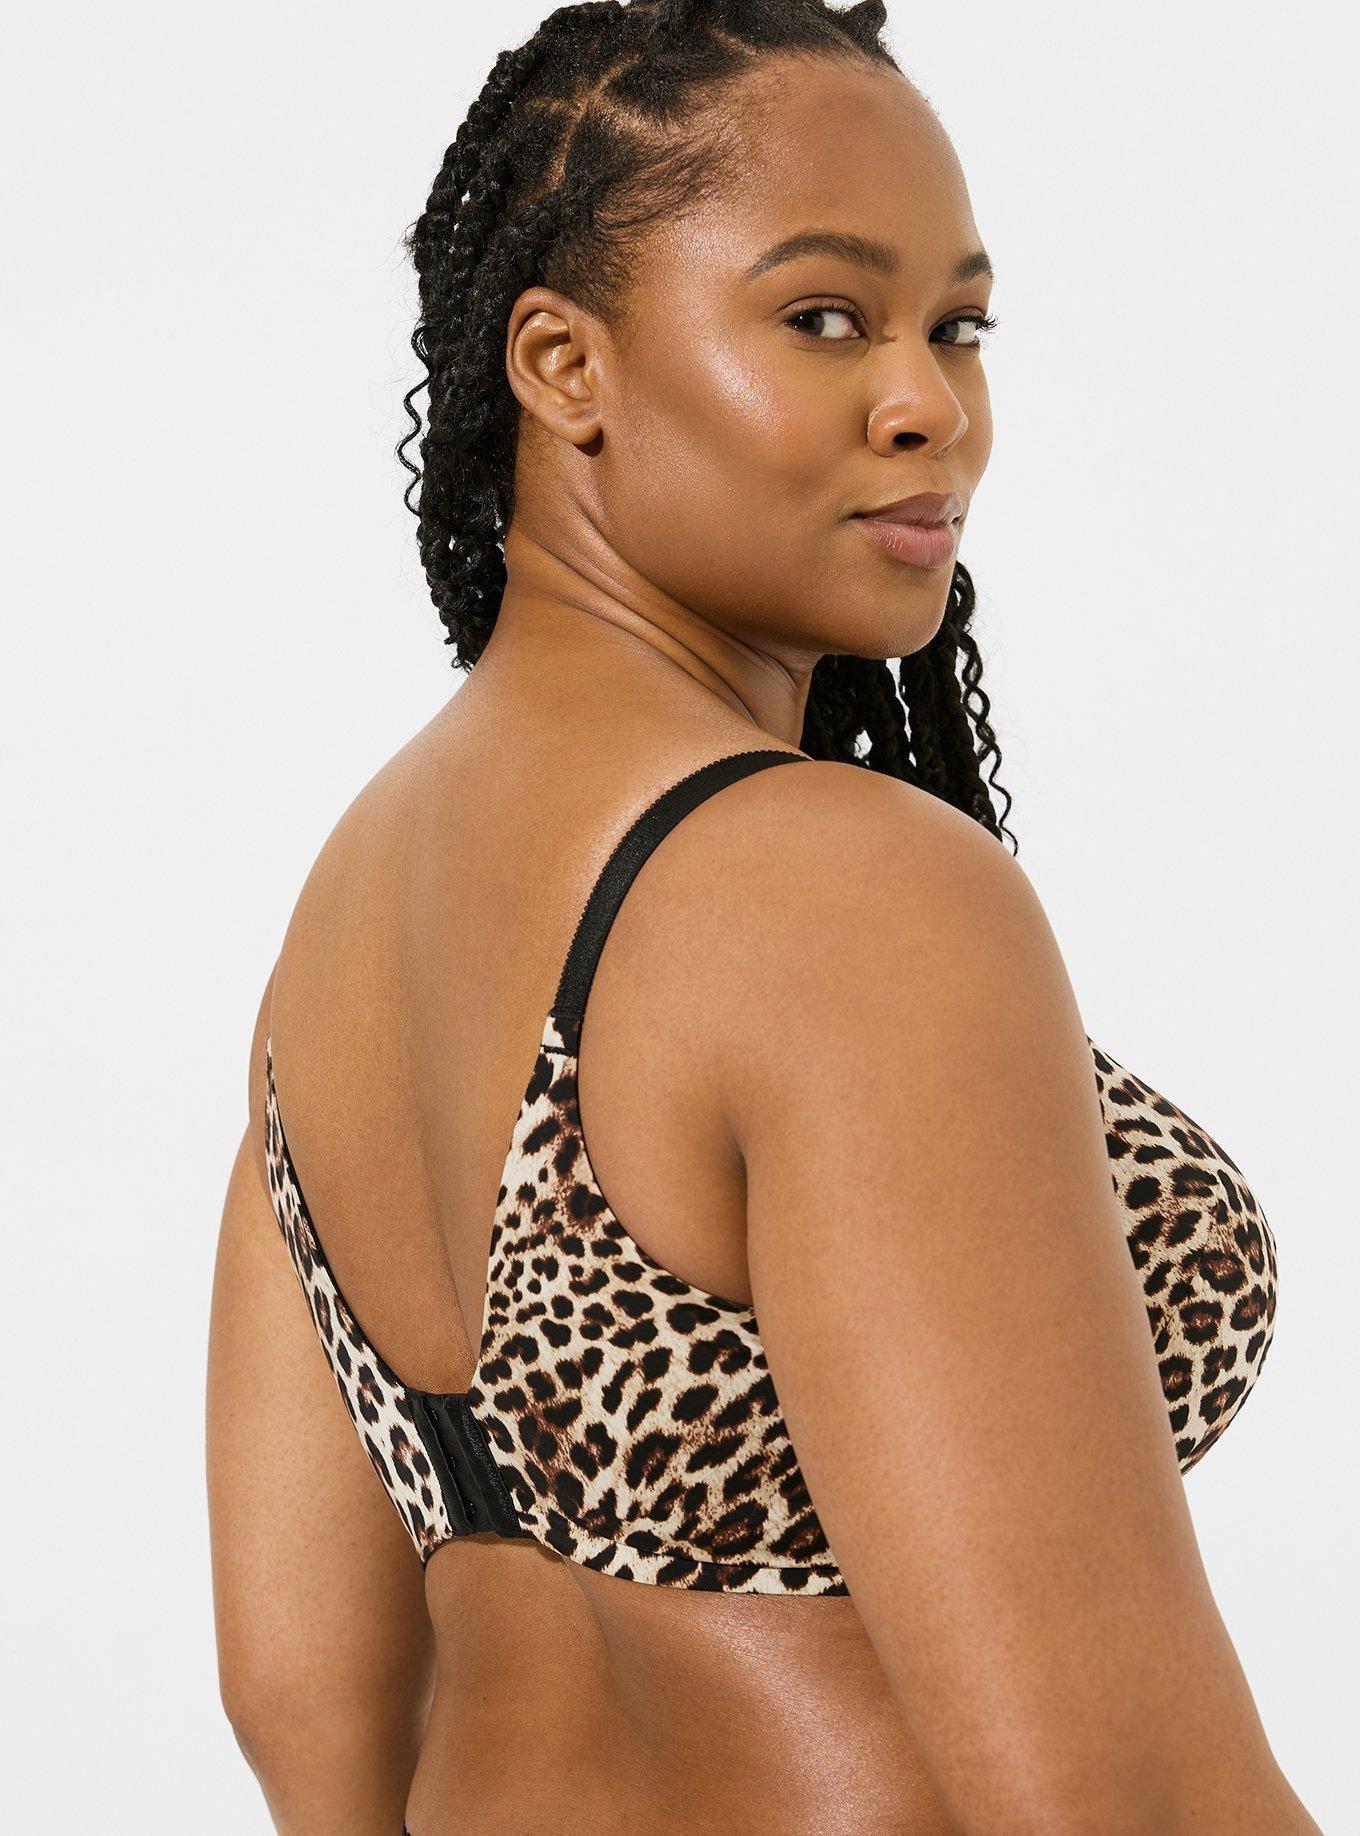 Buy Getmore Sexy Leopard Print Open Bust Lingerie Girl wear